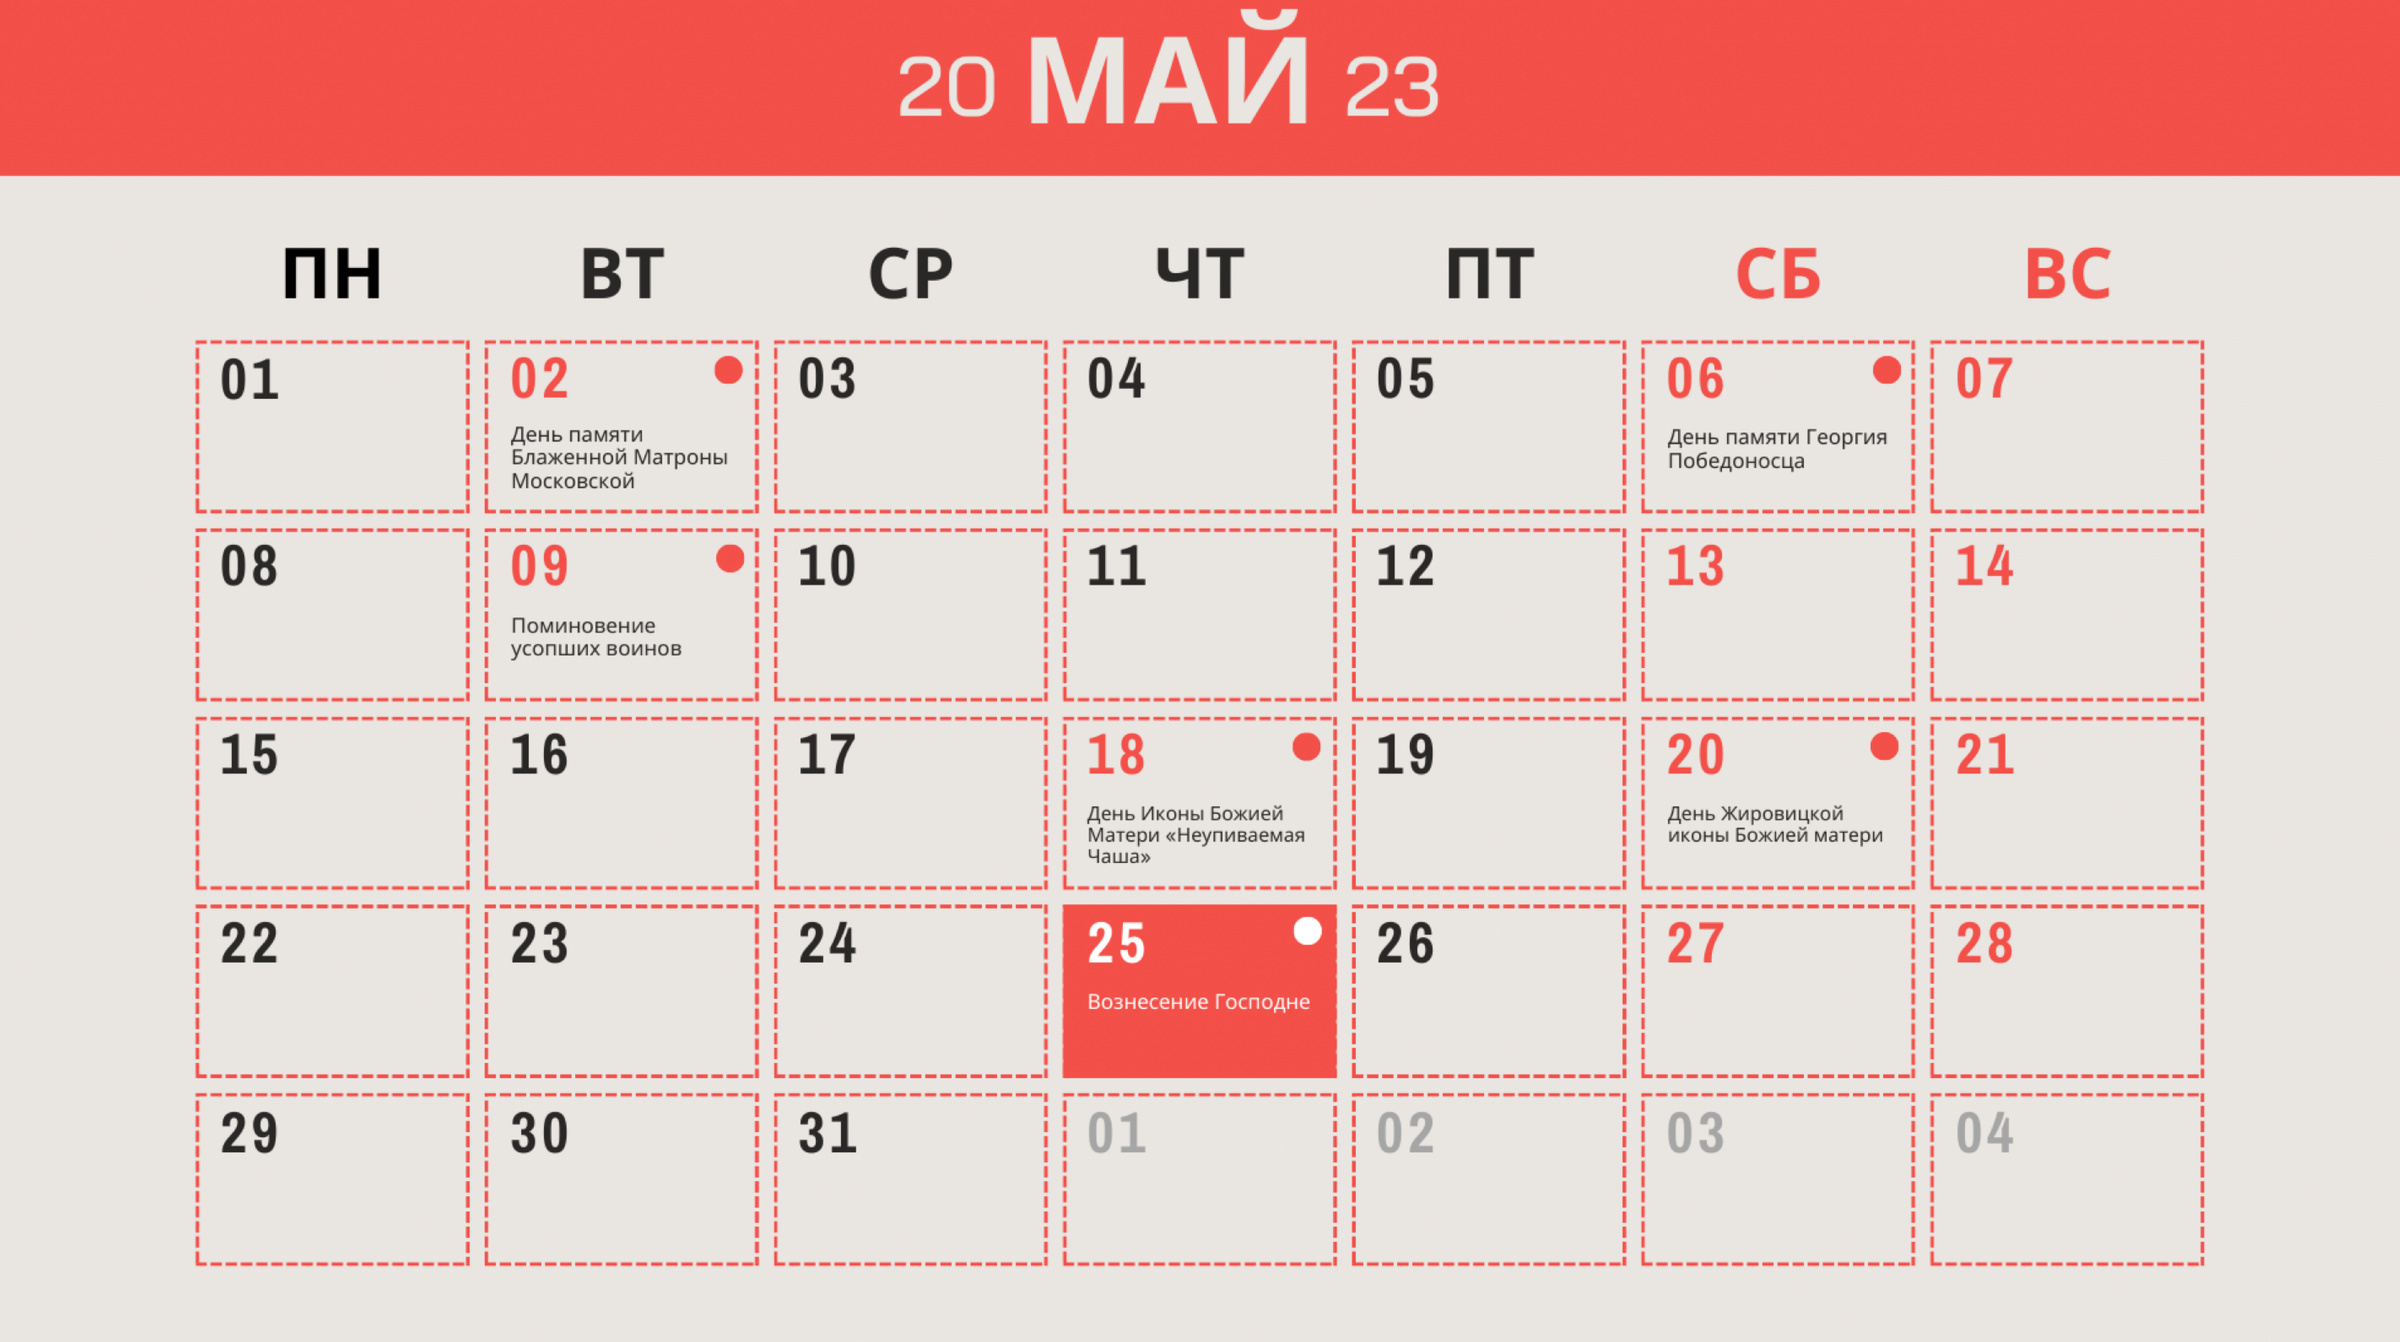 Православный календарь на май 2023 года с отмеченными праздниками и памятными днями. Инфографика © LIFE